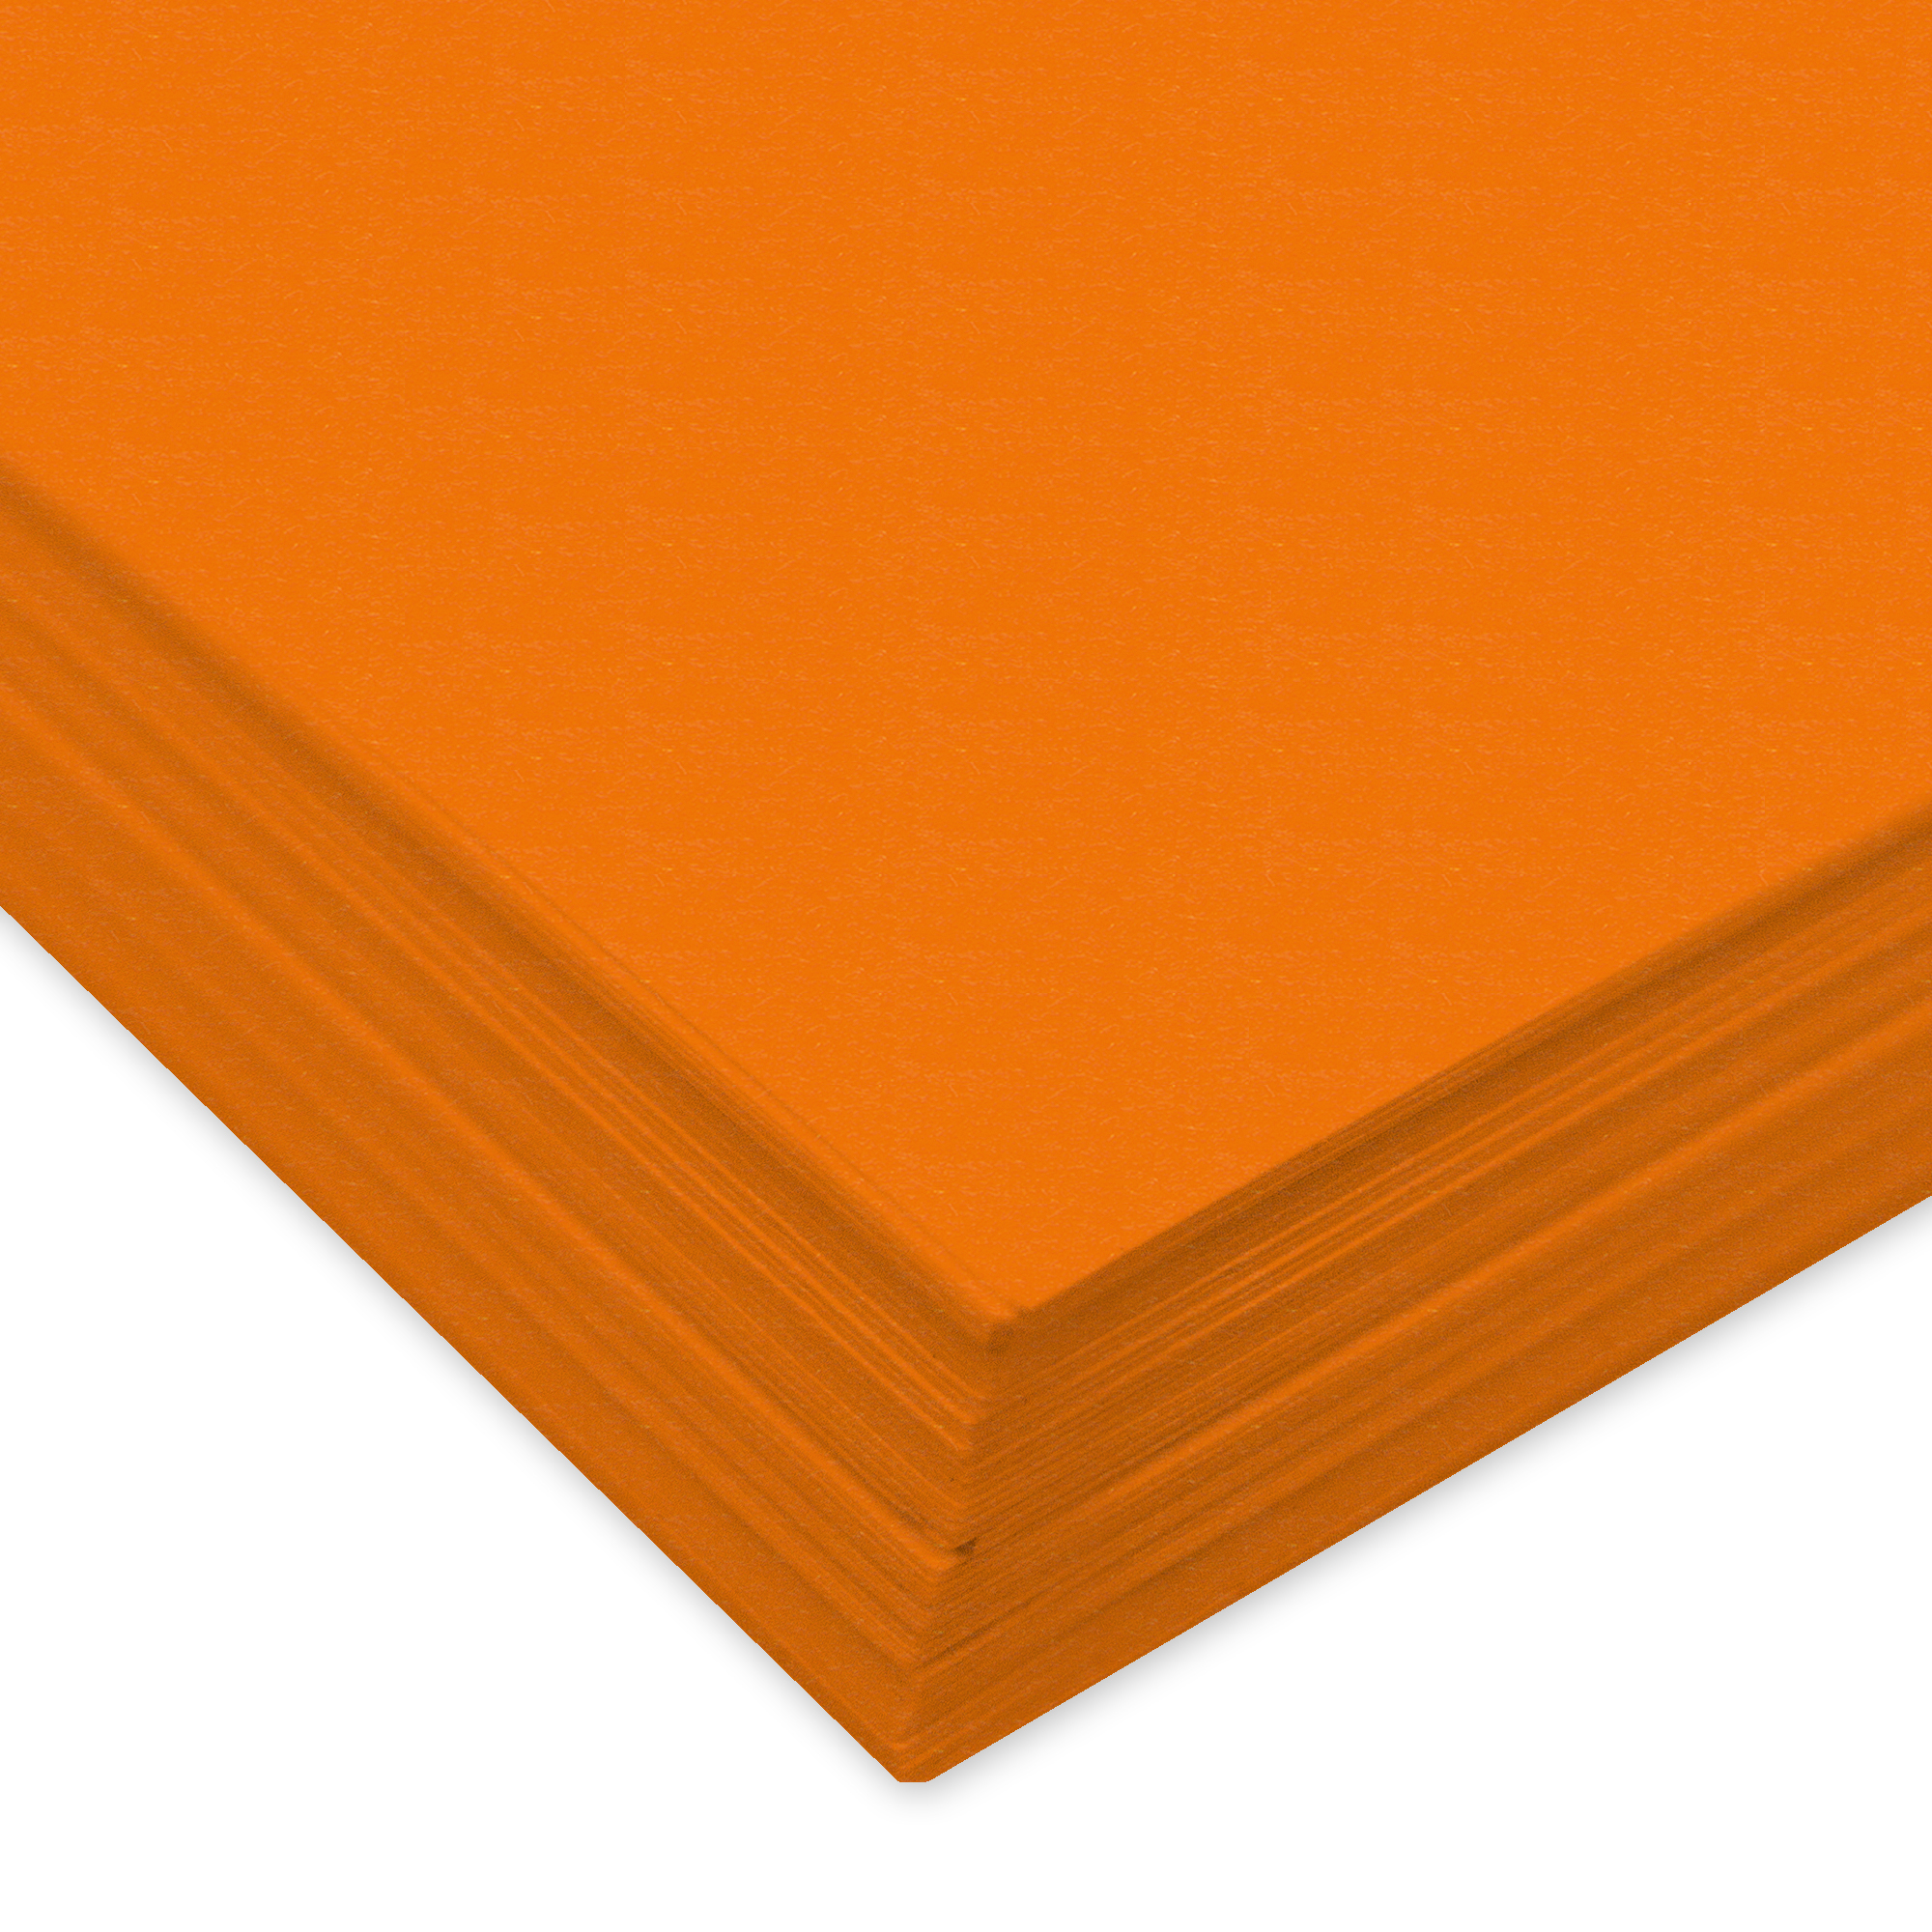 URSUS Papier à dessin couleur A3 2174040 130g, orange clair 100 feuill. 130g, orange clair 100 feuil